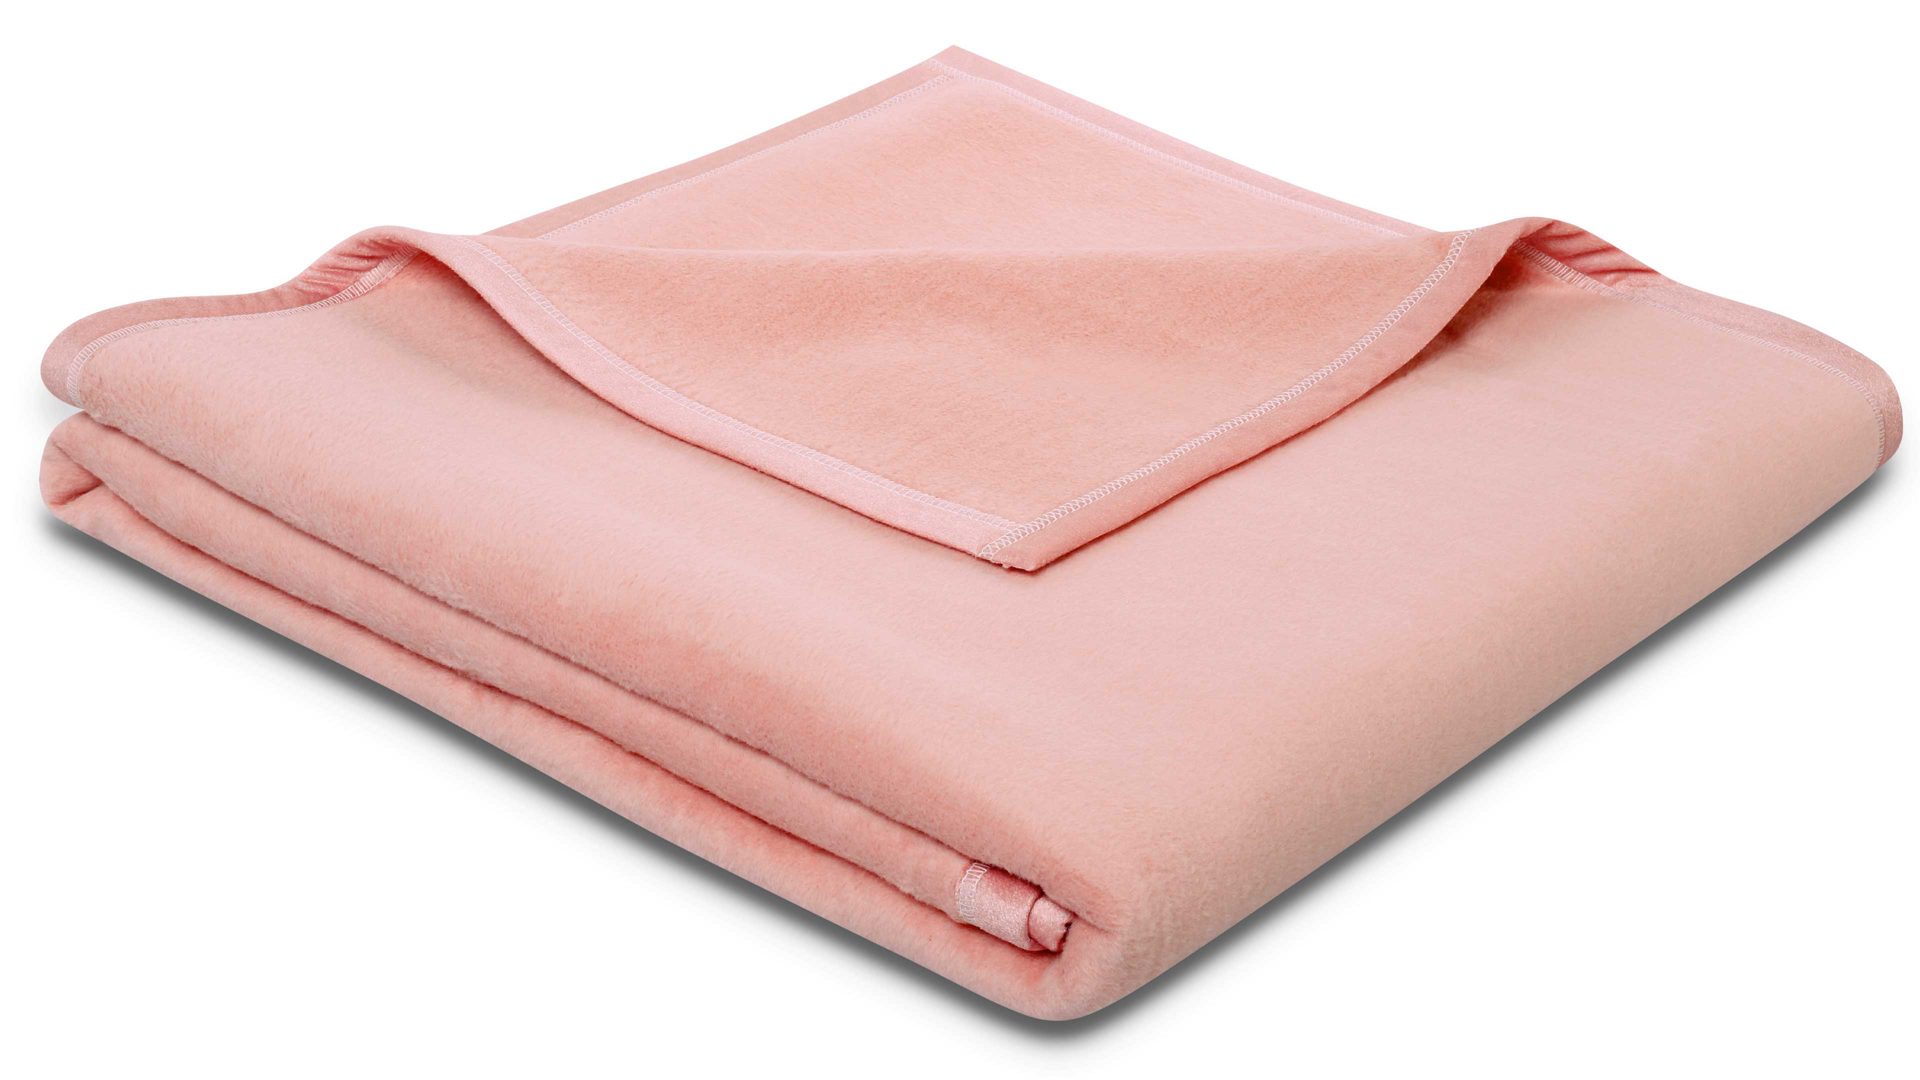 Wohndecke Biederlack aus Naturfaser in Pink biederlack Wohndecke Cotton Sense Rosenholz – ca. 150 x 200 cm